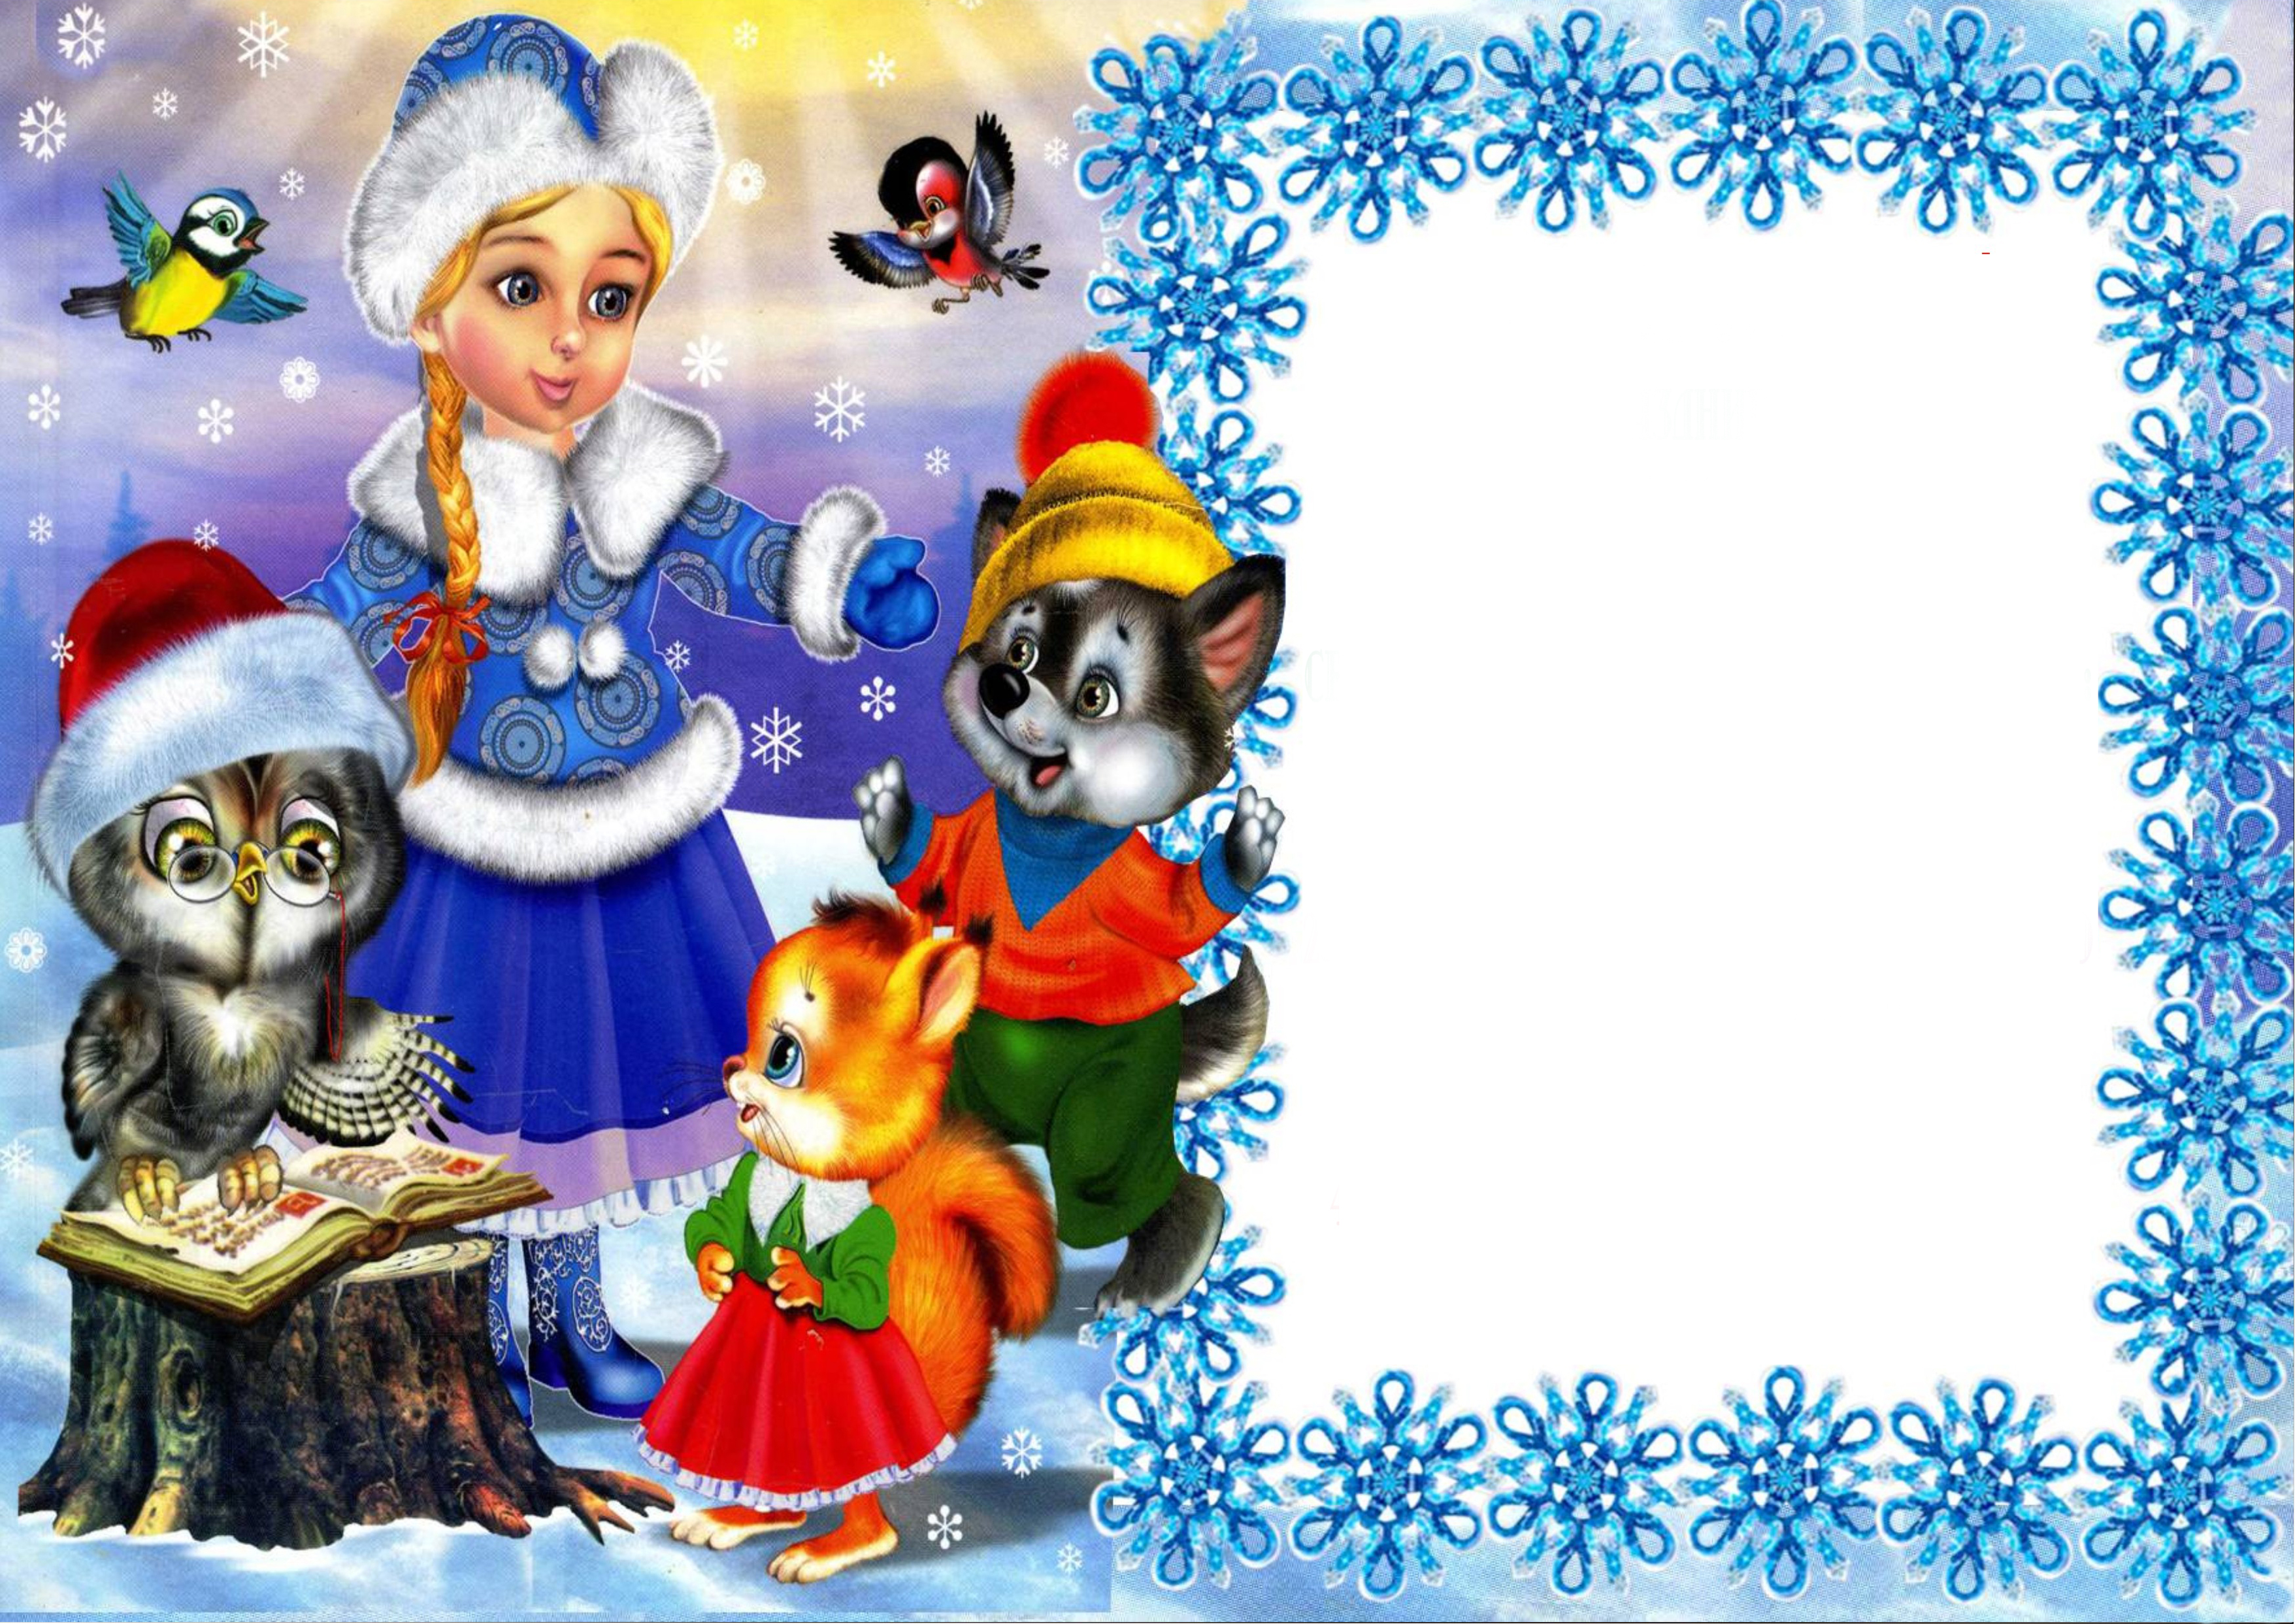 Сценарий сказок школьника. Новогодняя картинка для объявления. Новогодние картинки детские. Поздравление Деда Мороза и Снегурочки для детей. Новый год сказка.